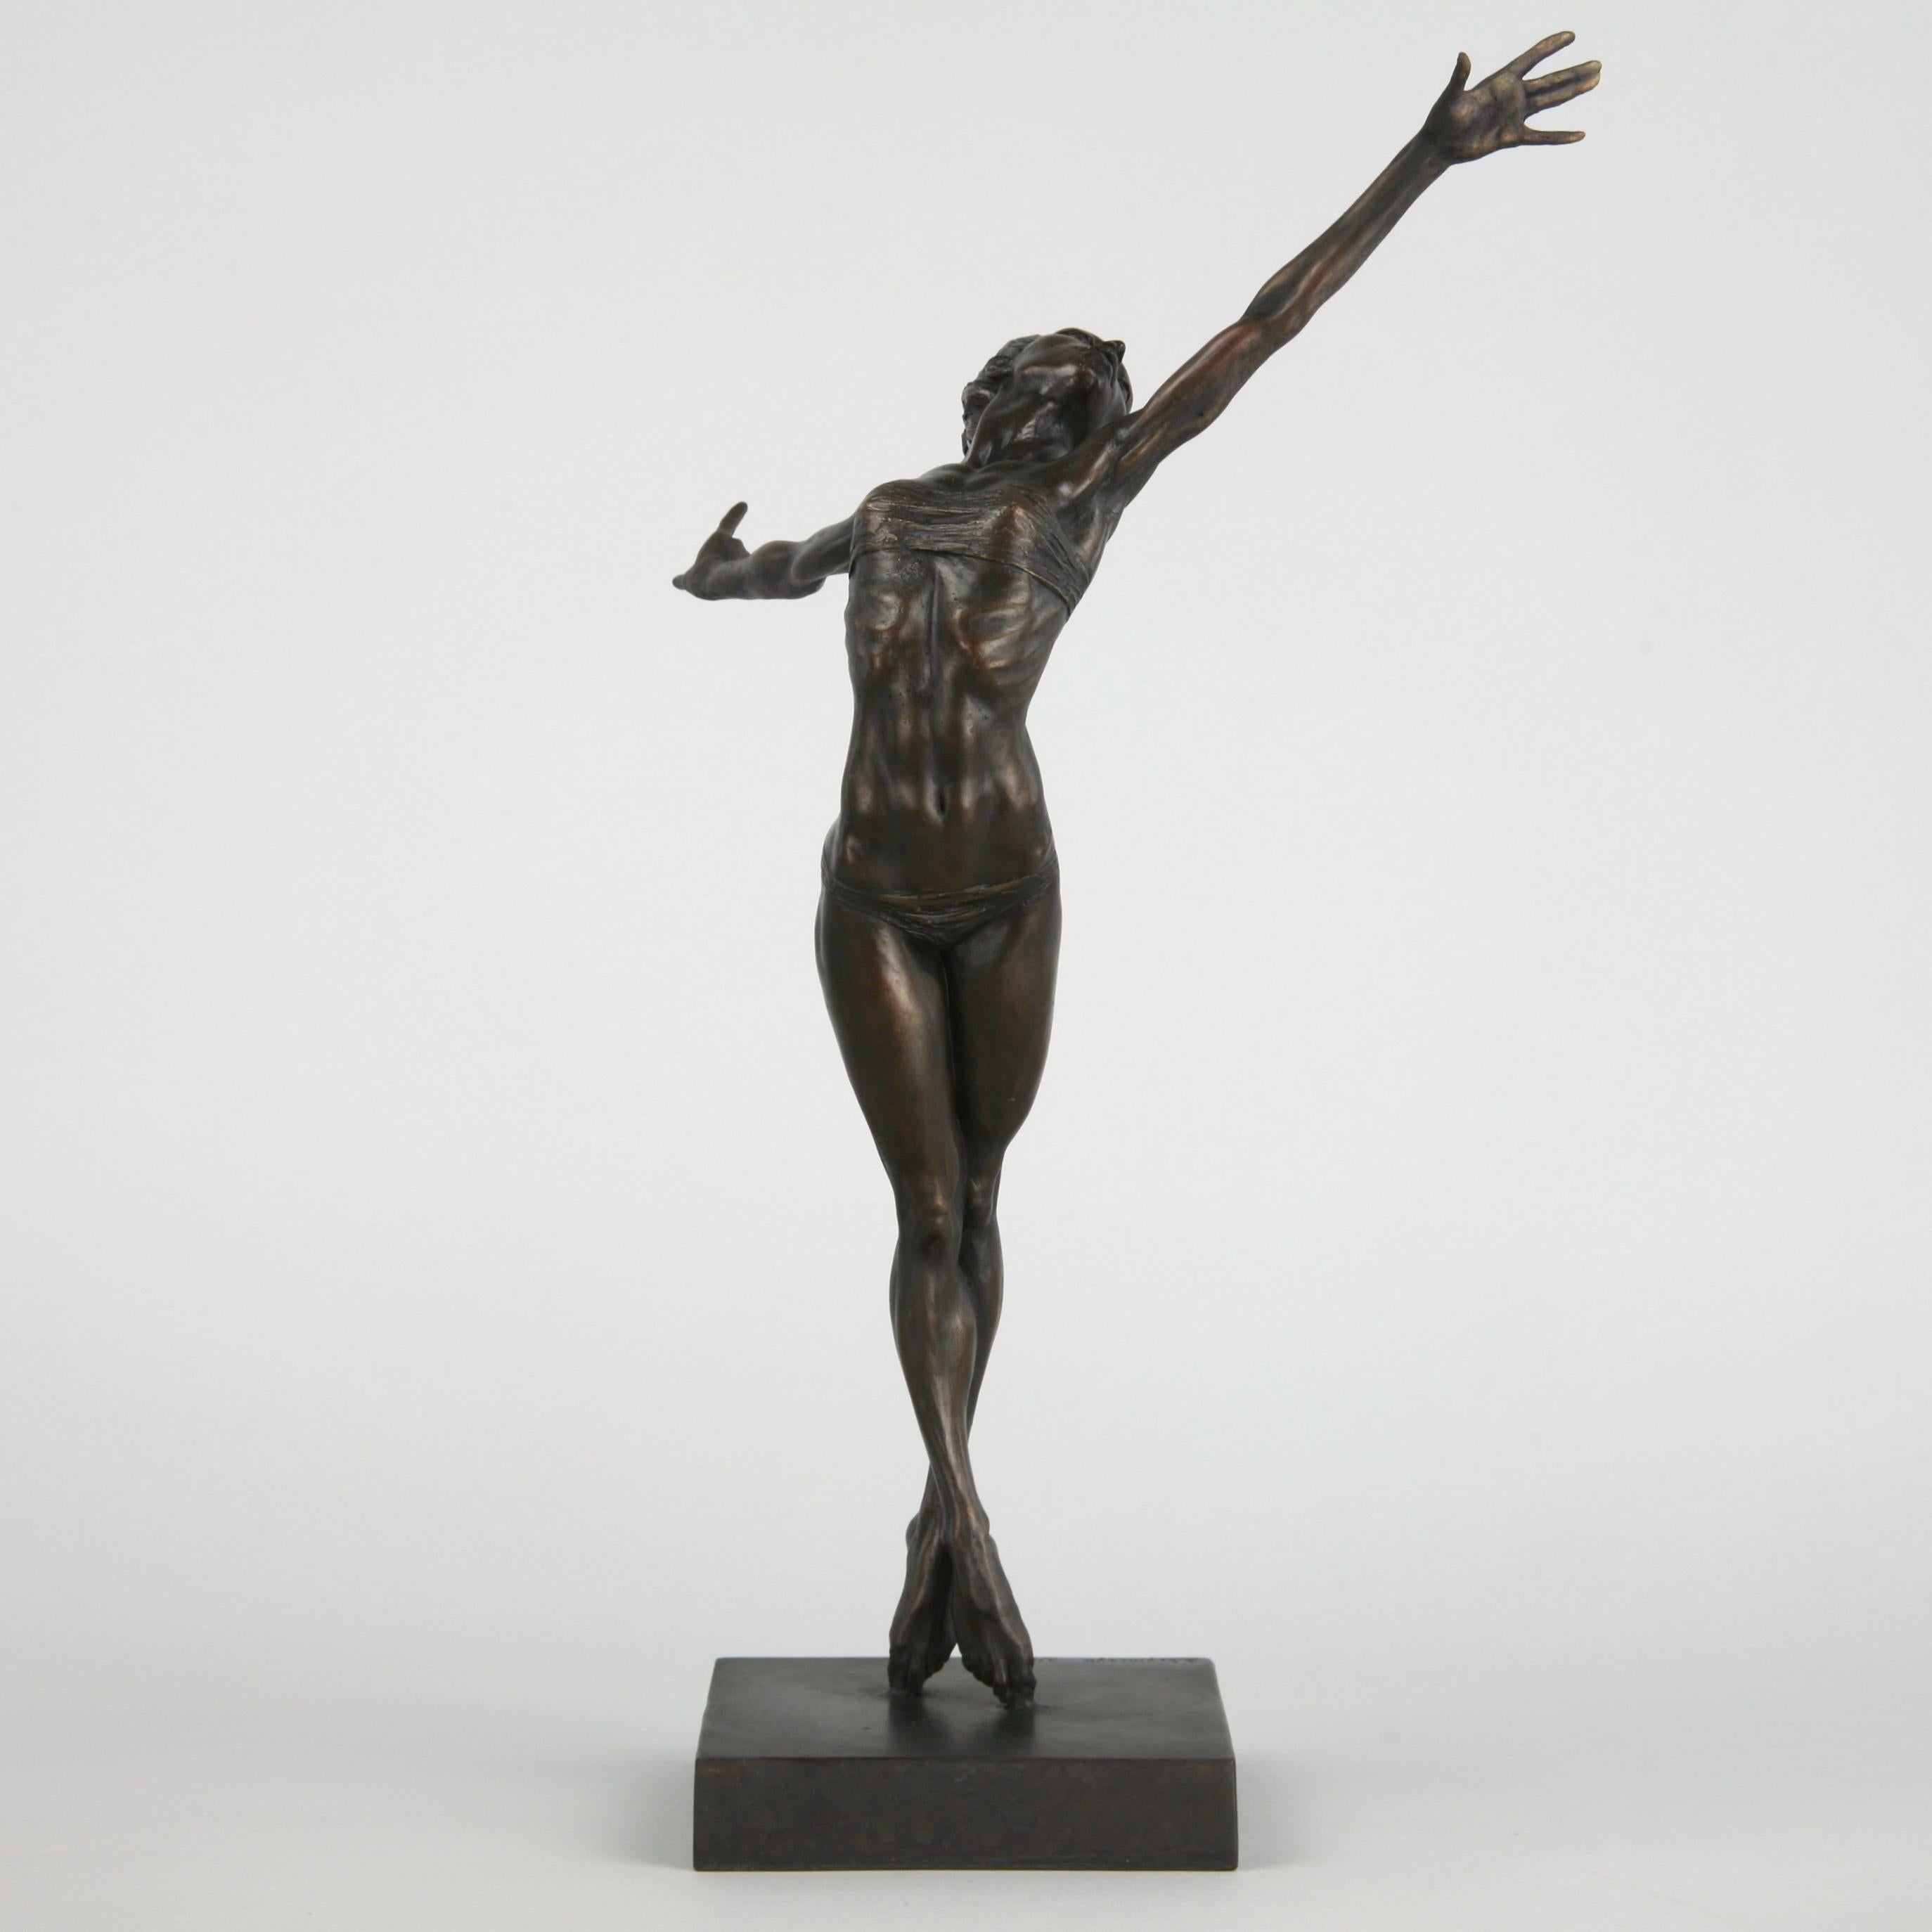 Pole Dancer-original nude figurative bronze sculpture-artwork-contemporary Art